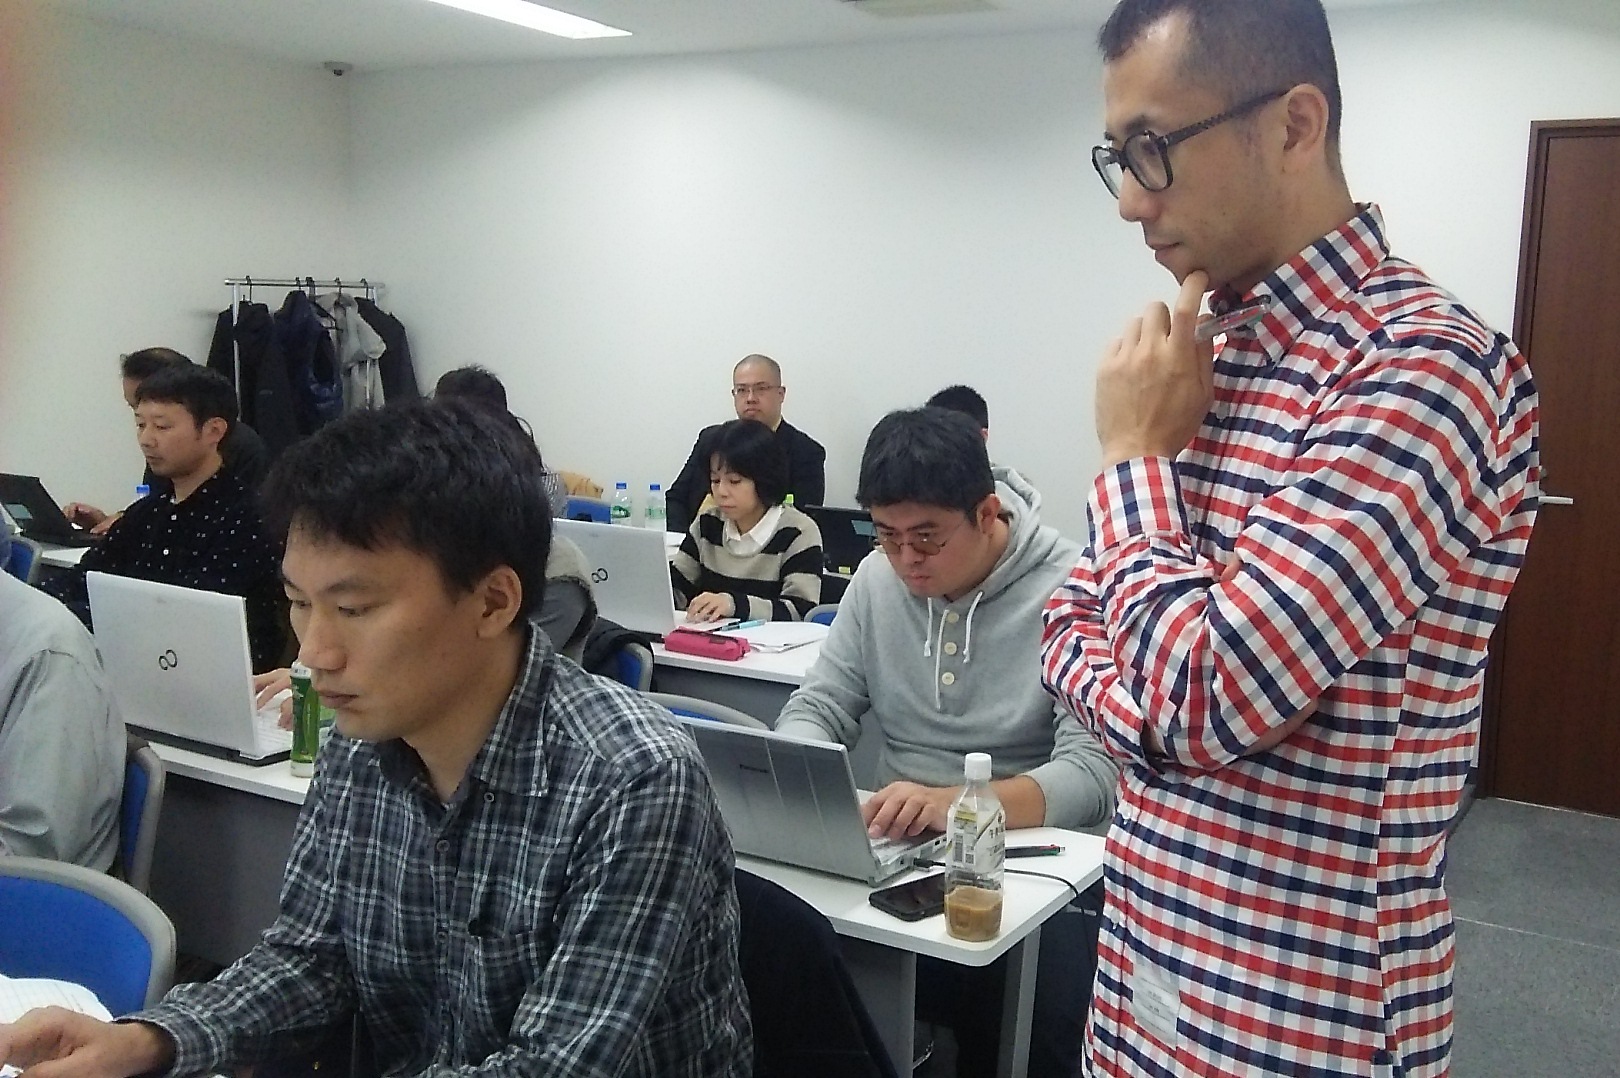 講師の小川自ら教室内を見回り、受講生を見守ります。